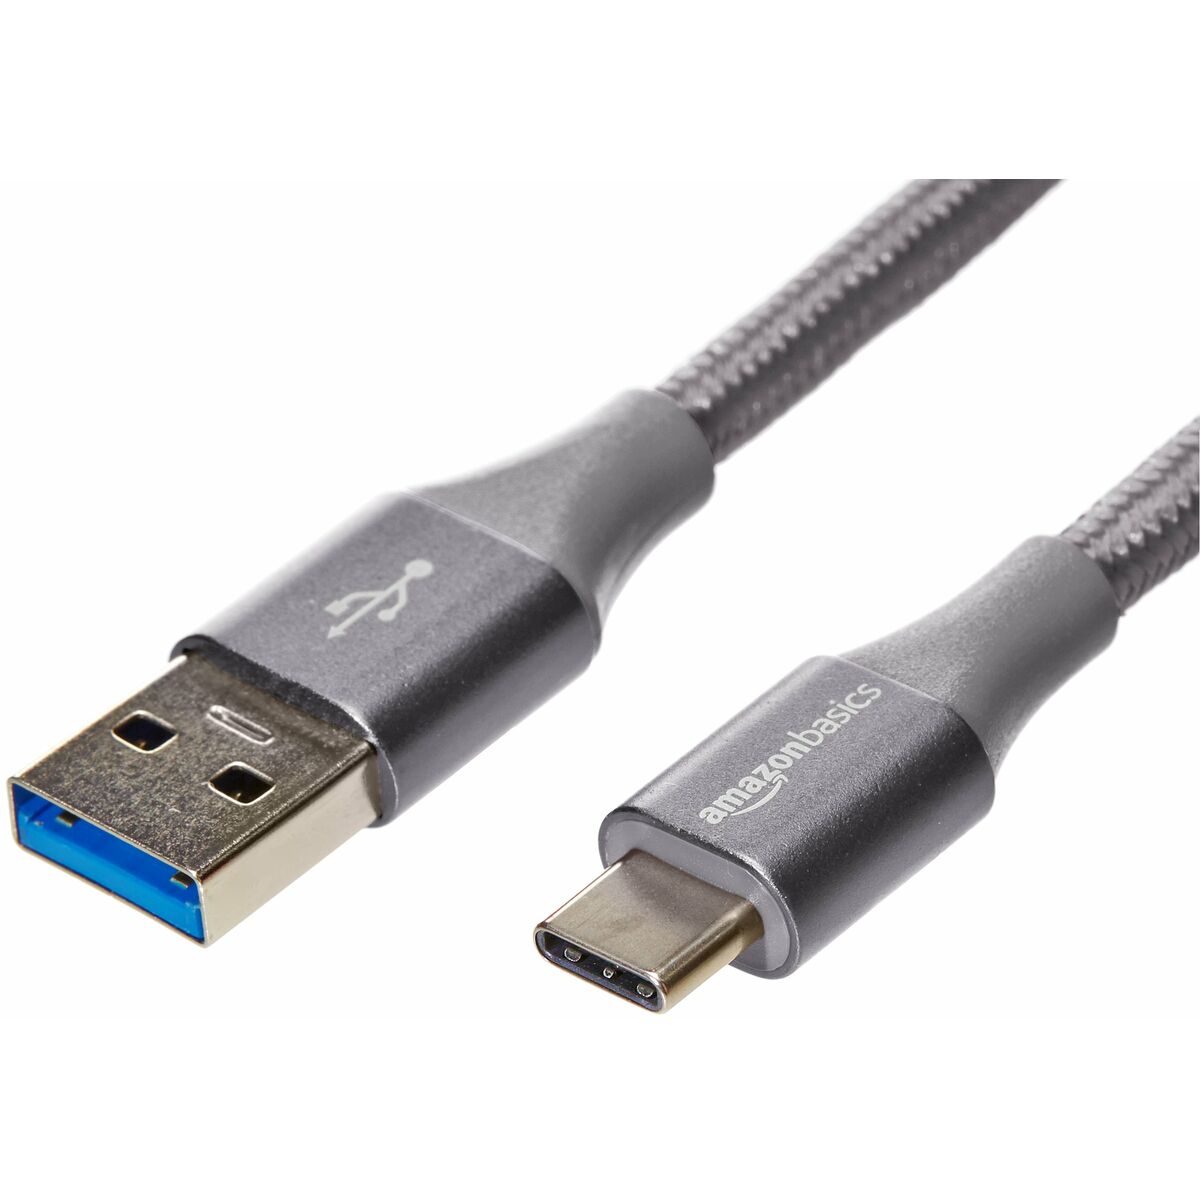 Cable USB Amazon Basics (Reacondicionado A)